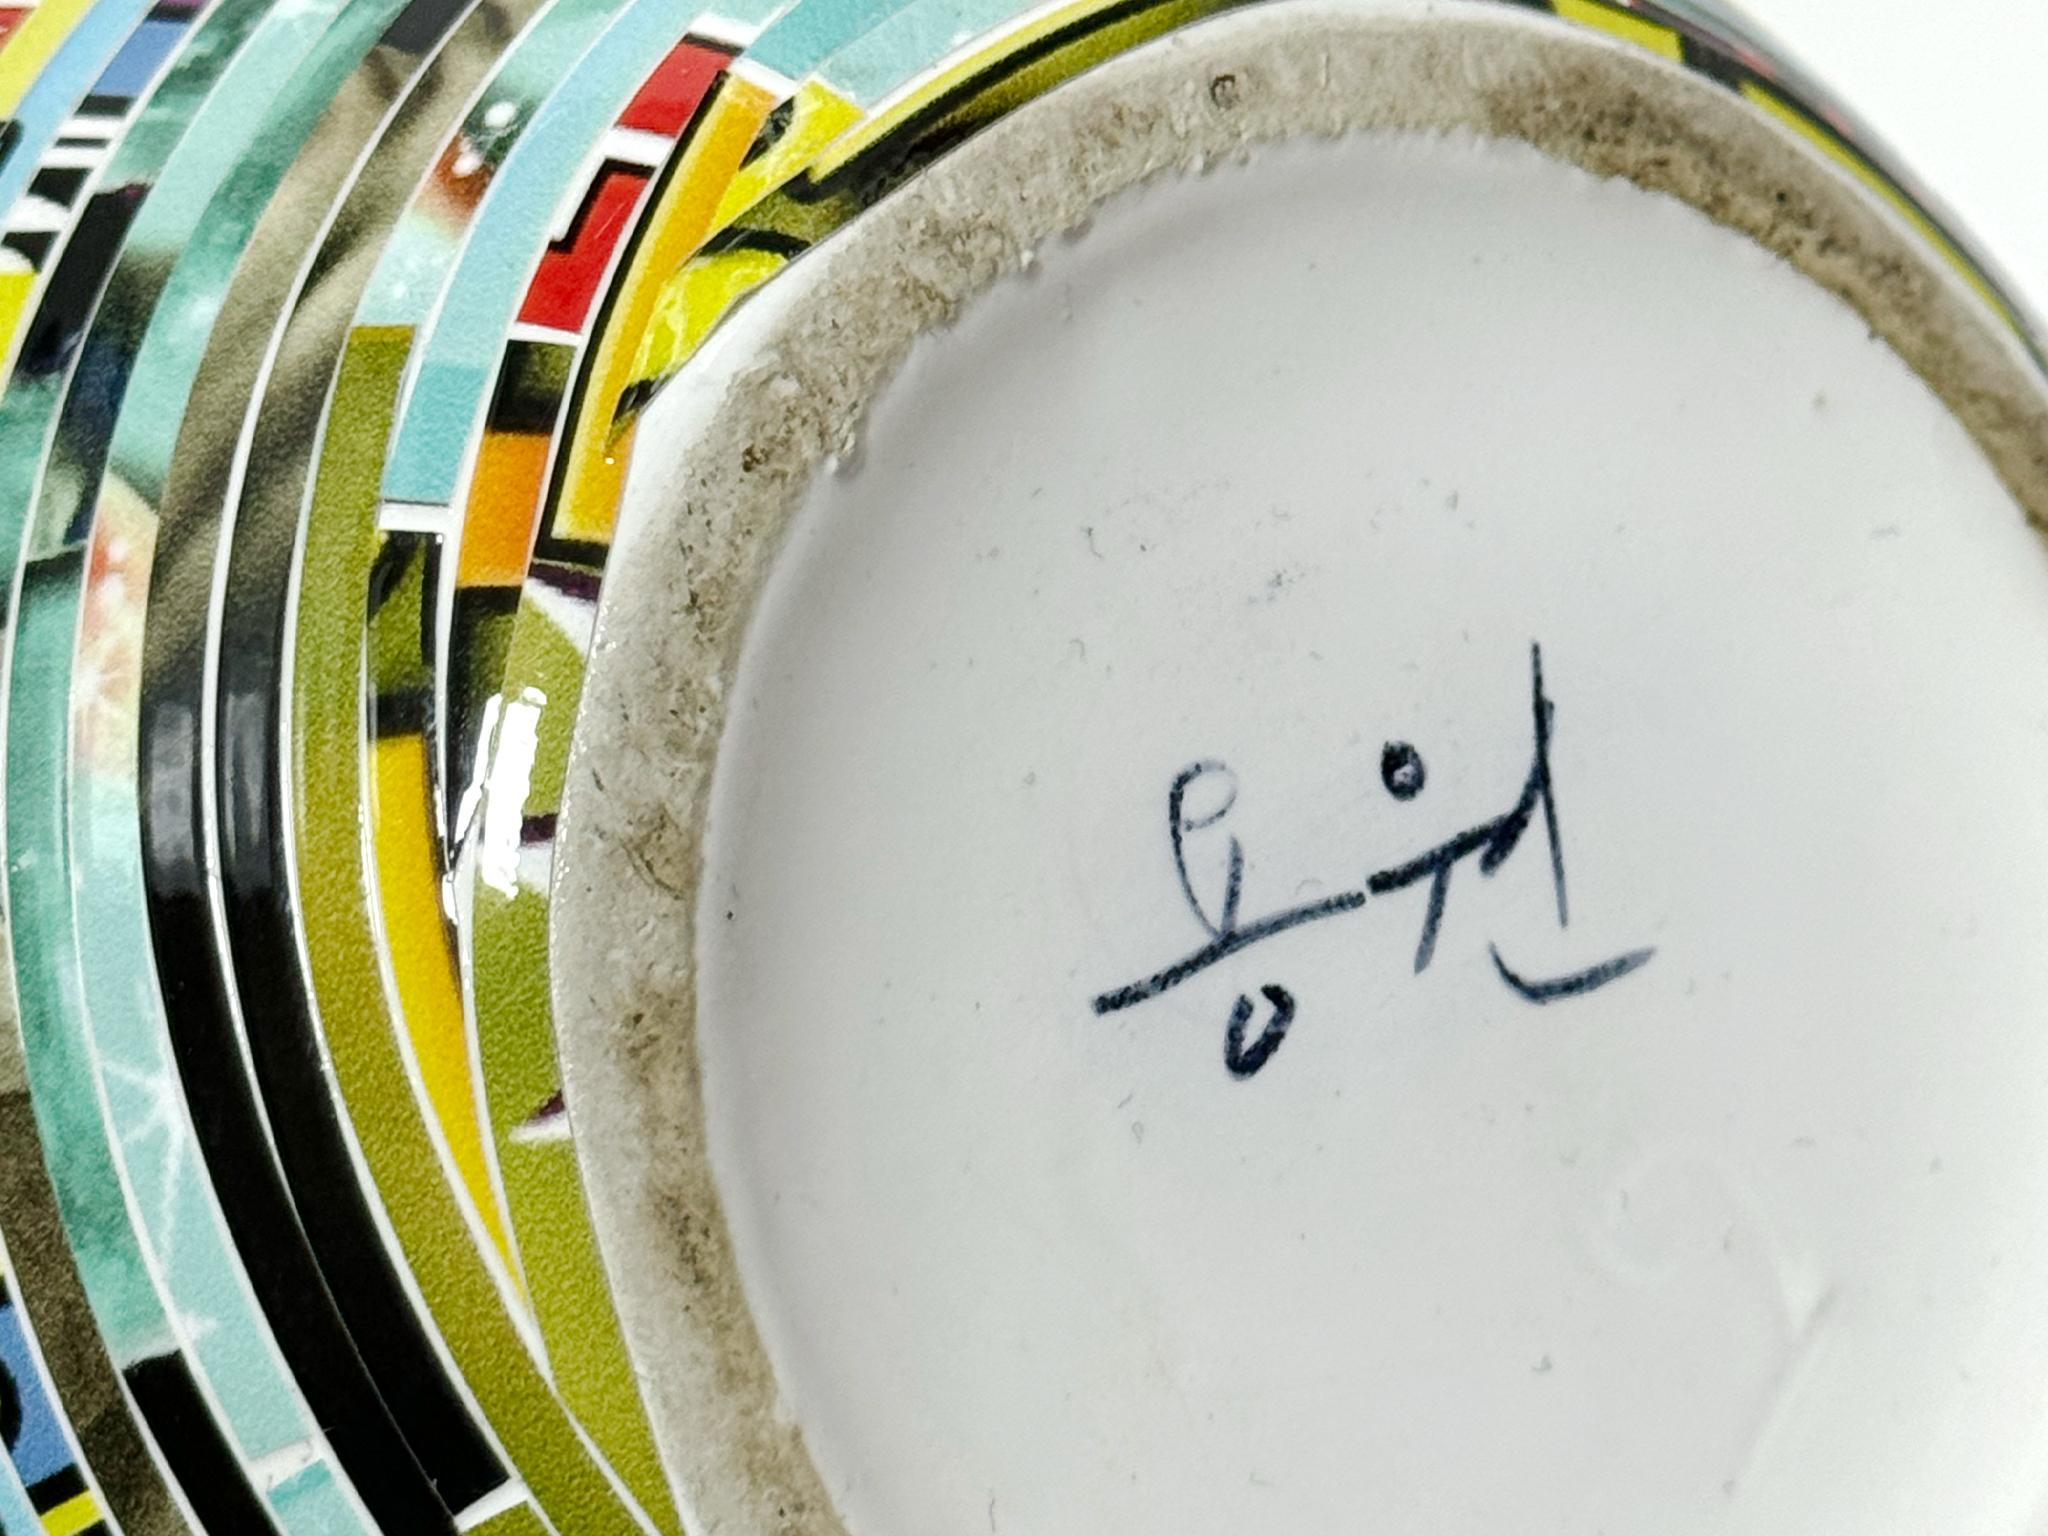 Jjirasi-Vase #03, 2023 von Yongwon Noh
Aus der Serie Jjirasi 
Keramik, PVC-Aufkleber und Harz
Größe: 6,3 Zoll. H x 6.3 in. W x 6.3 in. D
Gewicht: 3kg Unverpackt
Einzigartiges Stück
Signatur auf dem Boden der Vase

Jjirasi Vase erforscht die